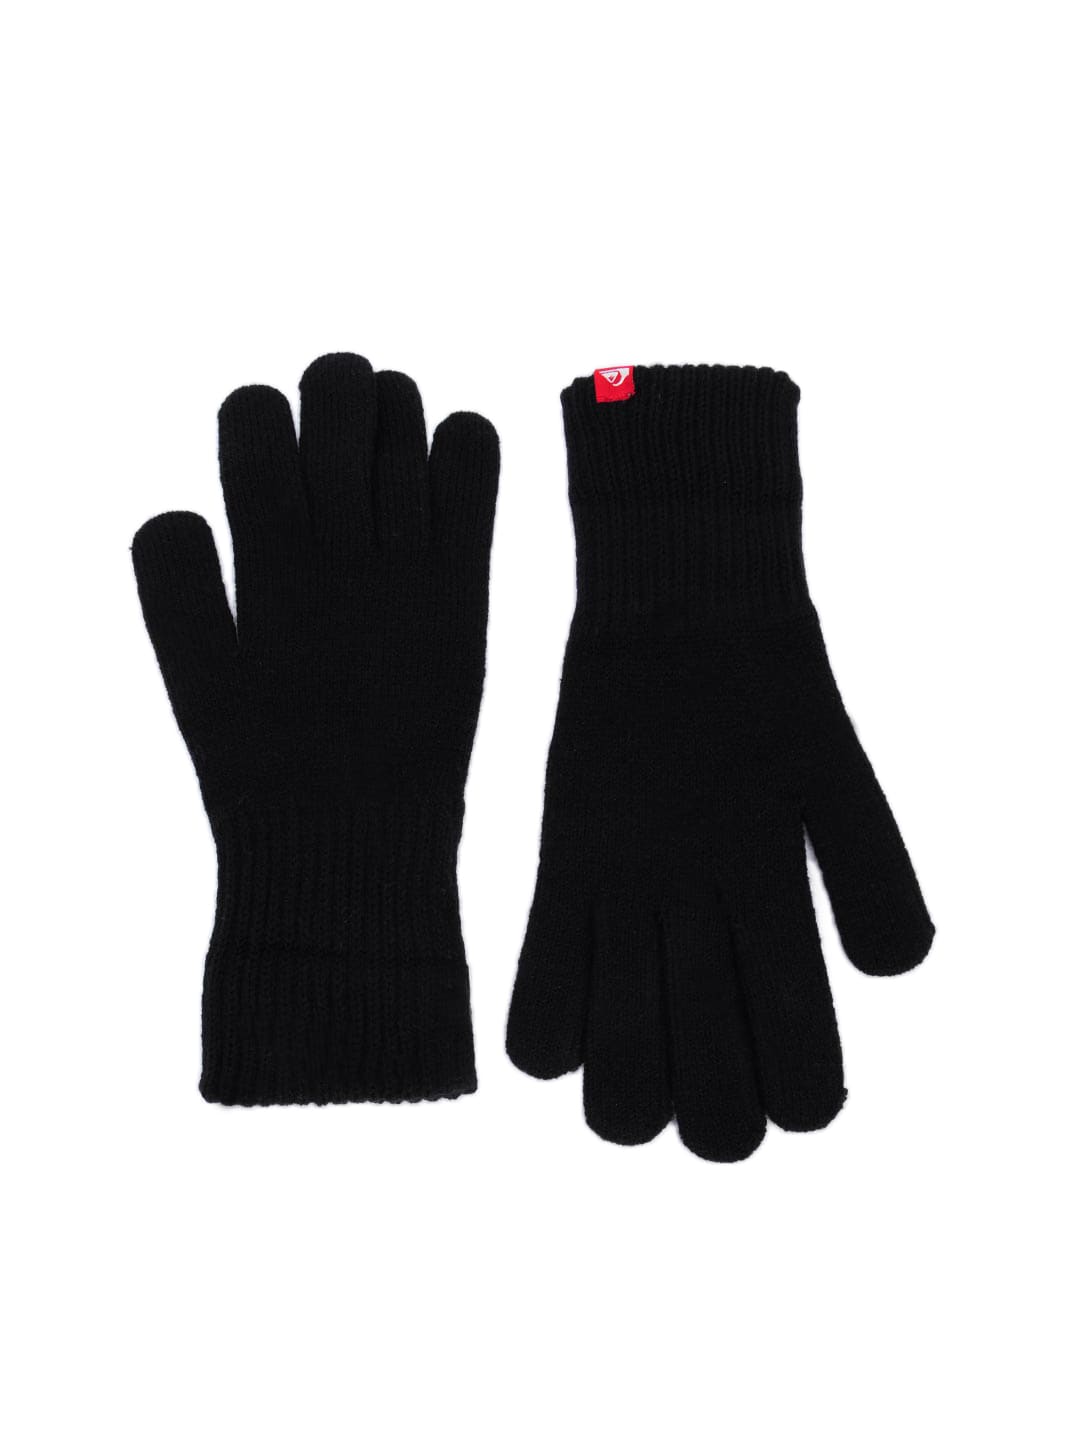 Quiksilver Men Black Octo Gloves